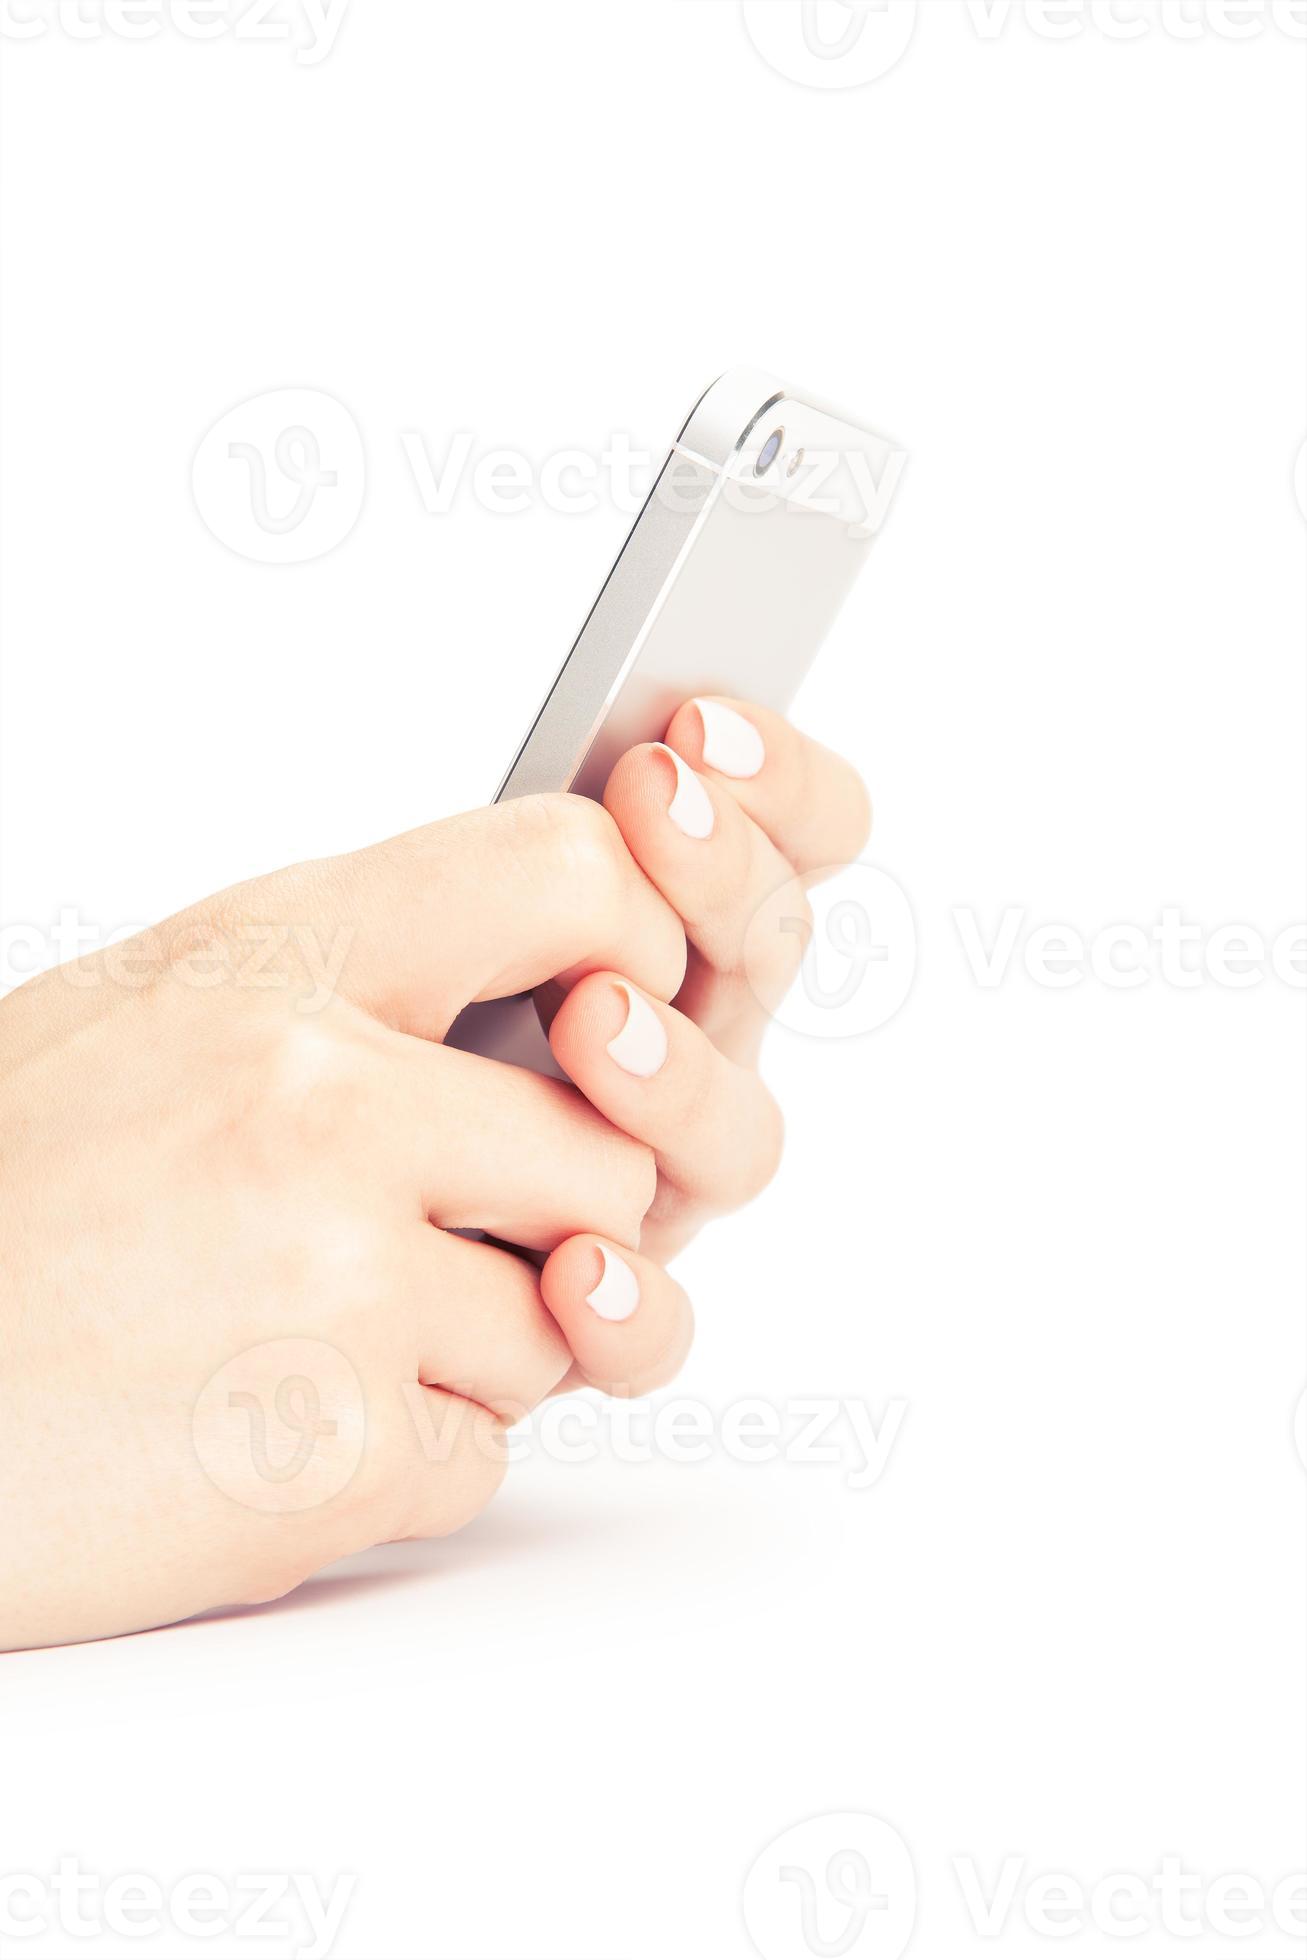 Mano que sostiene el teléfono inteligente blanco con pantalla en blanco sobre blanco centrico foto